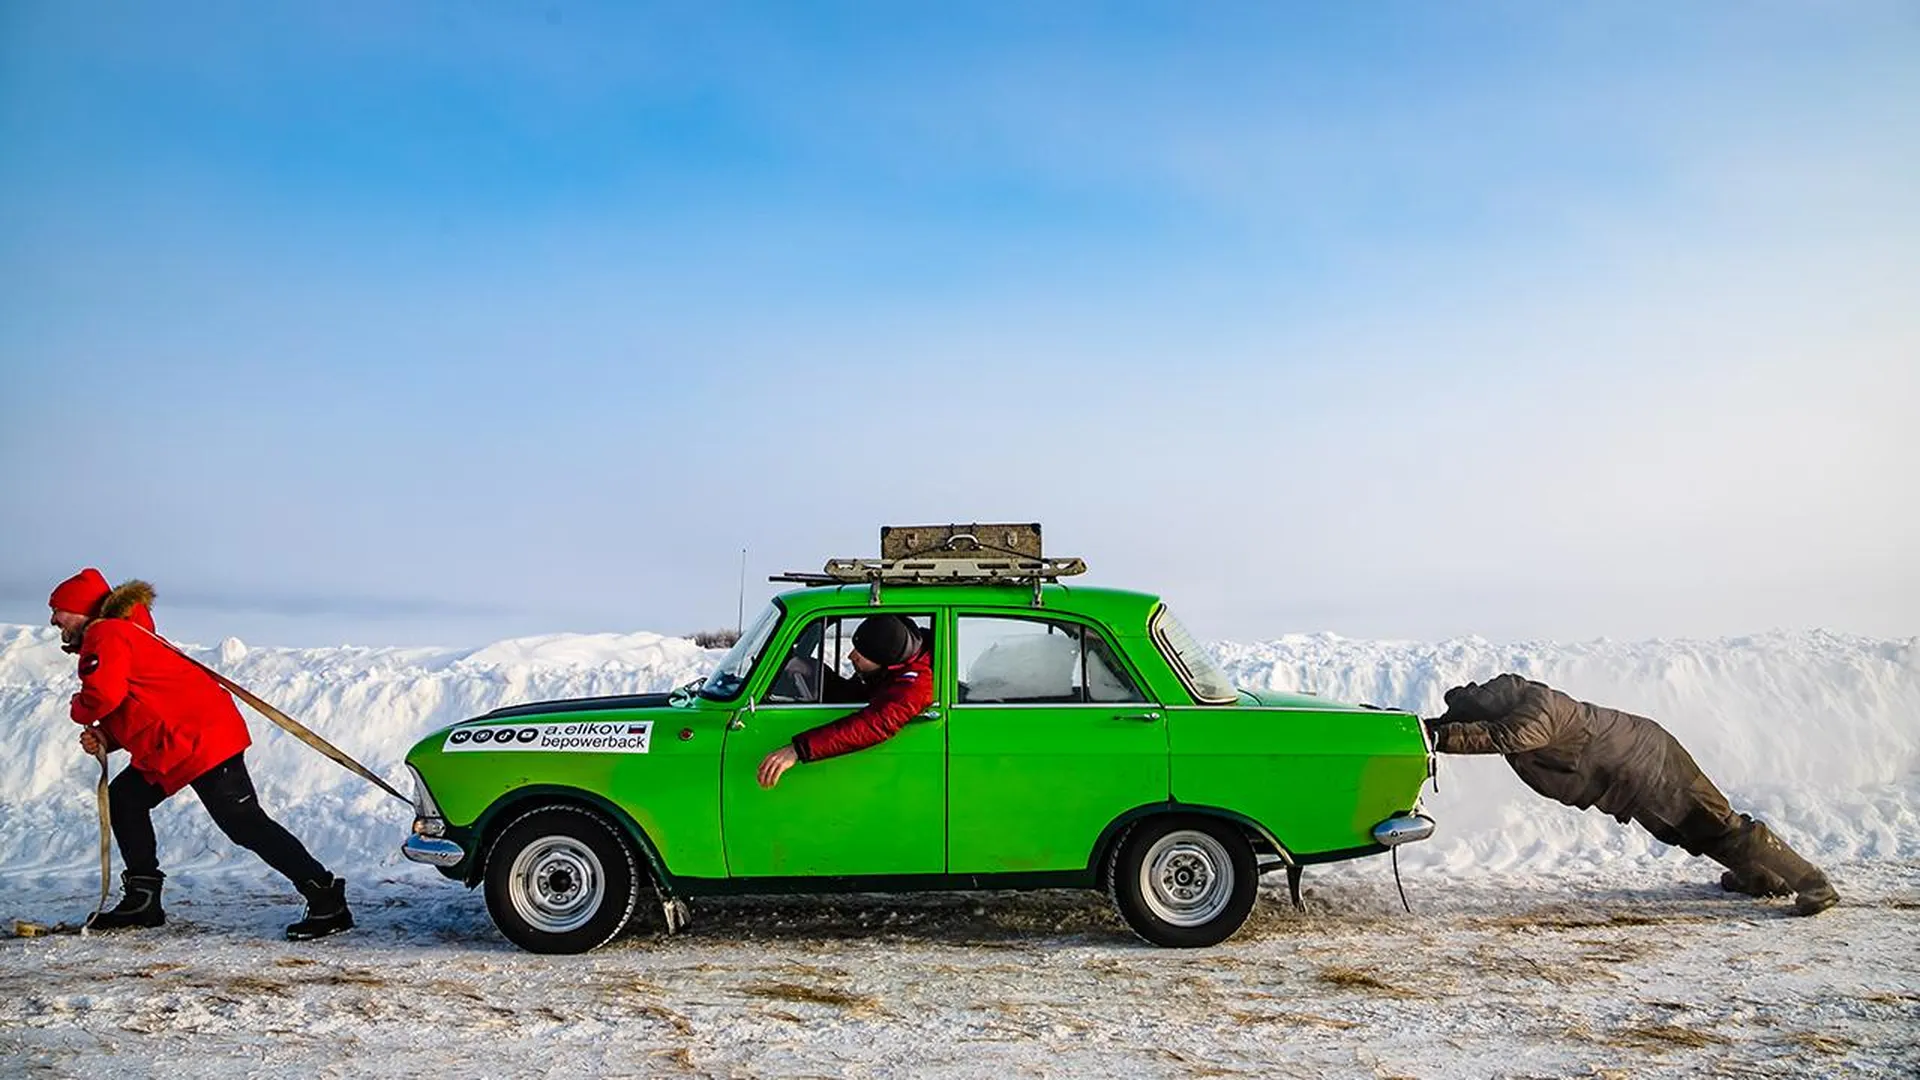 «У нас все время что-то отваливалось»: блогеры рассказали о своем удивительном путешествии в Арктику на стареньком авто